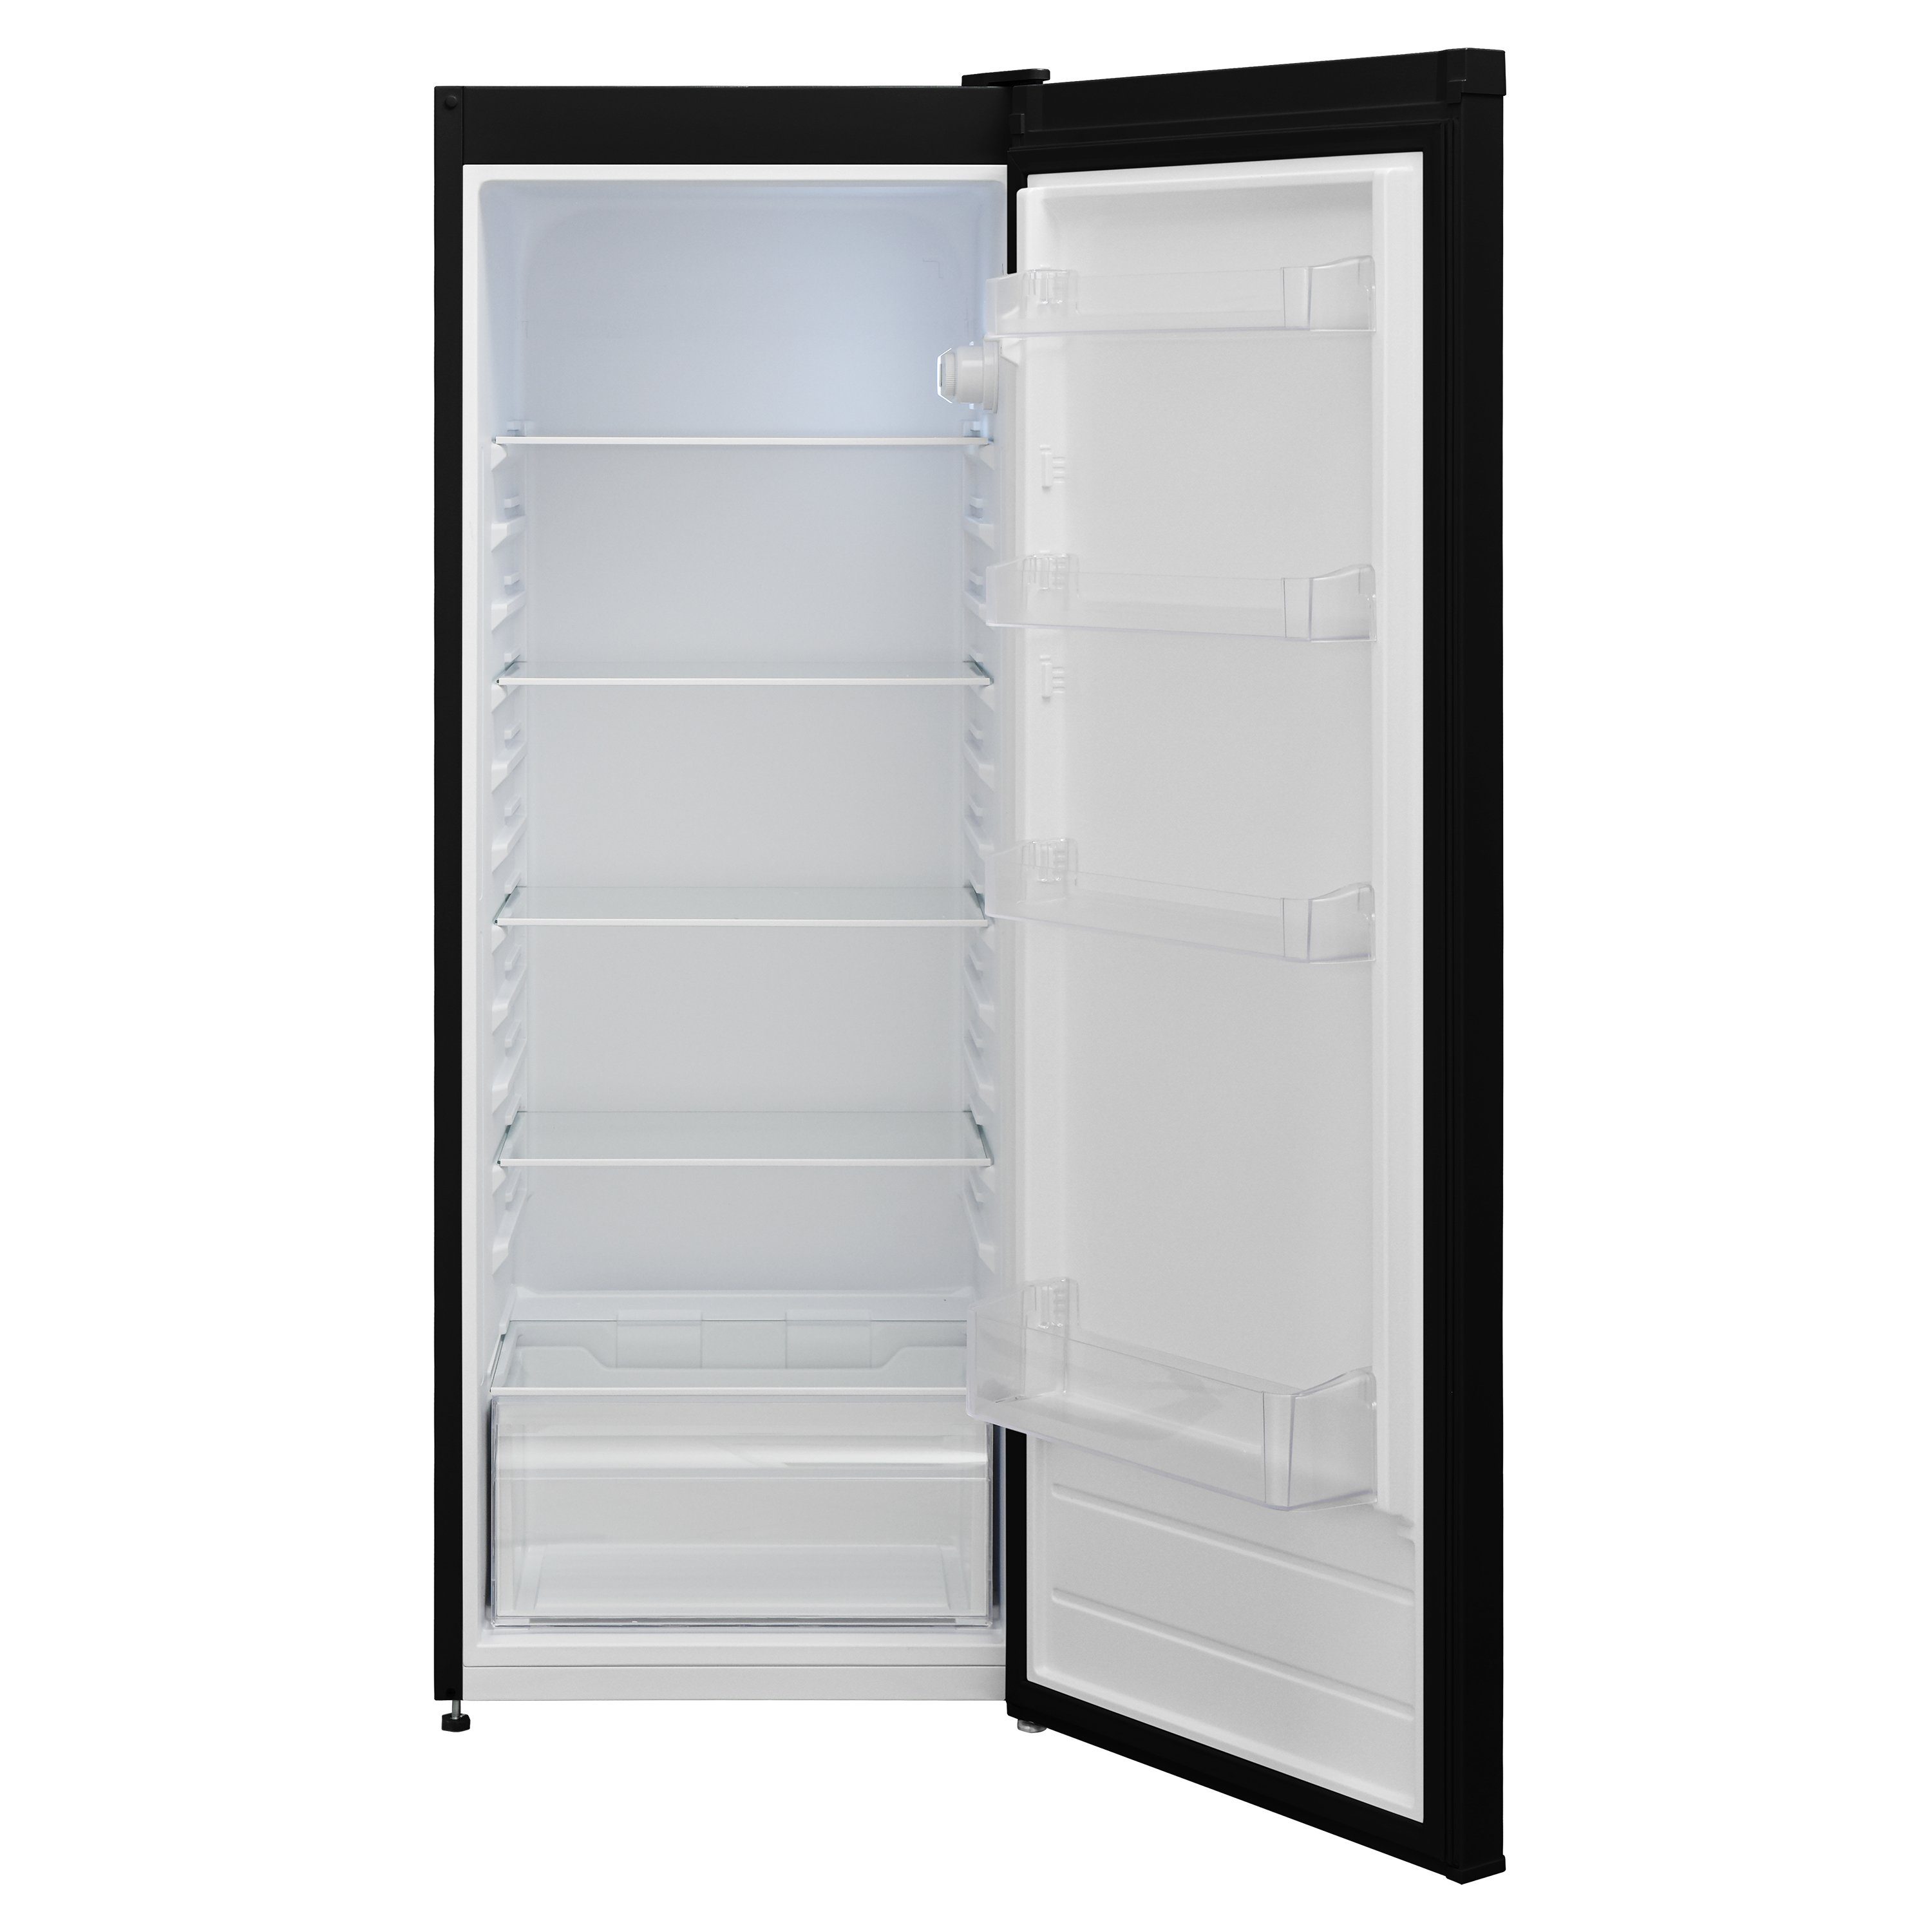 Telefunken Kühlschrank KTFK265EB2, 54 cm breit, 255 Liter, ohne Gefrierfach, Standkühlschrank groß, freistehend